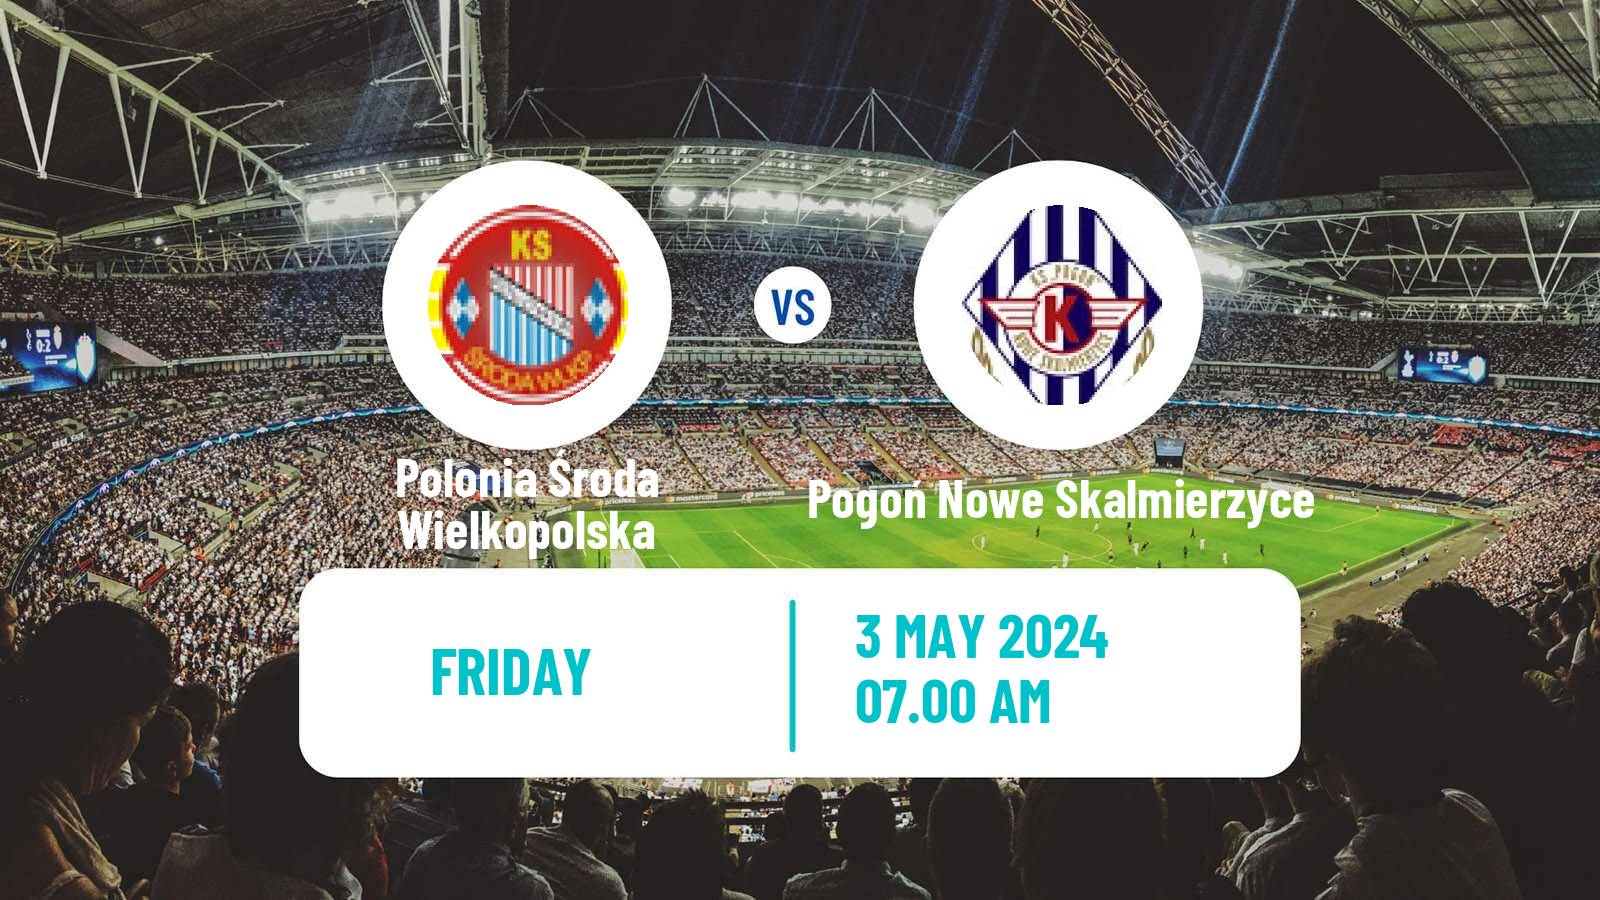 Soccer Polish Division 3 - Group II Polonia Środa Wielkopolska - Pogoń Nowe Skalmierzyce